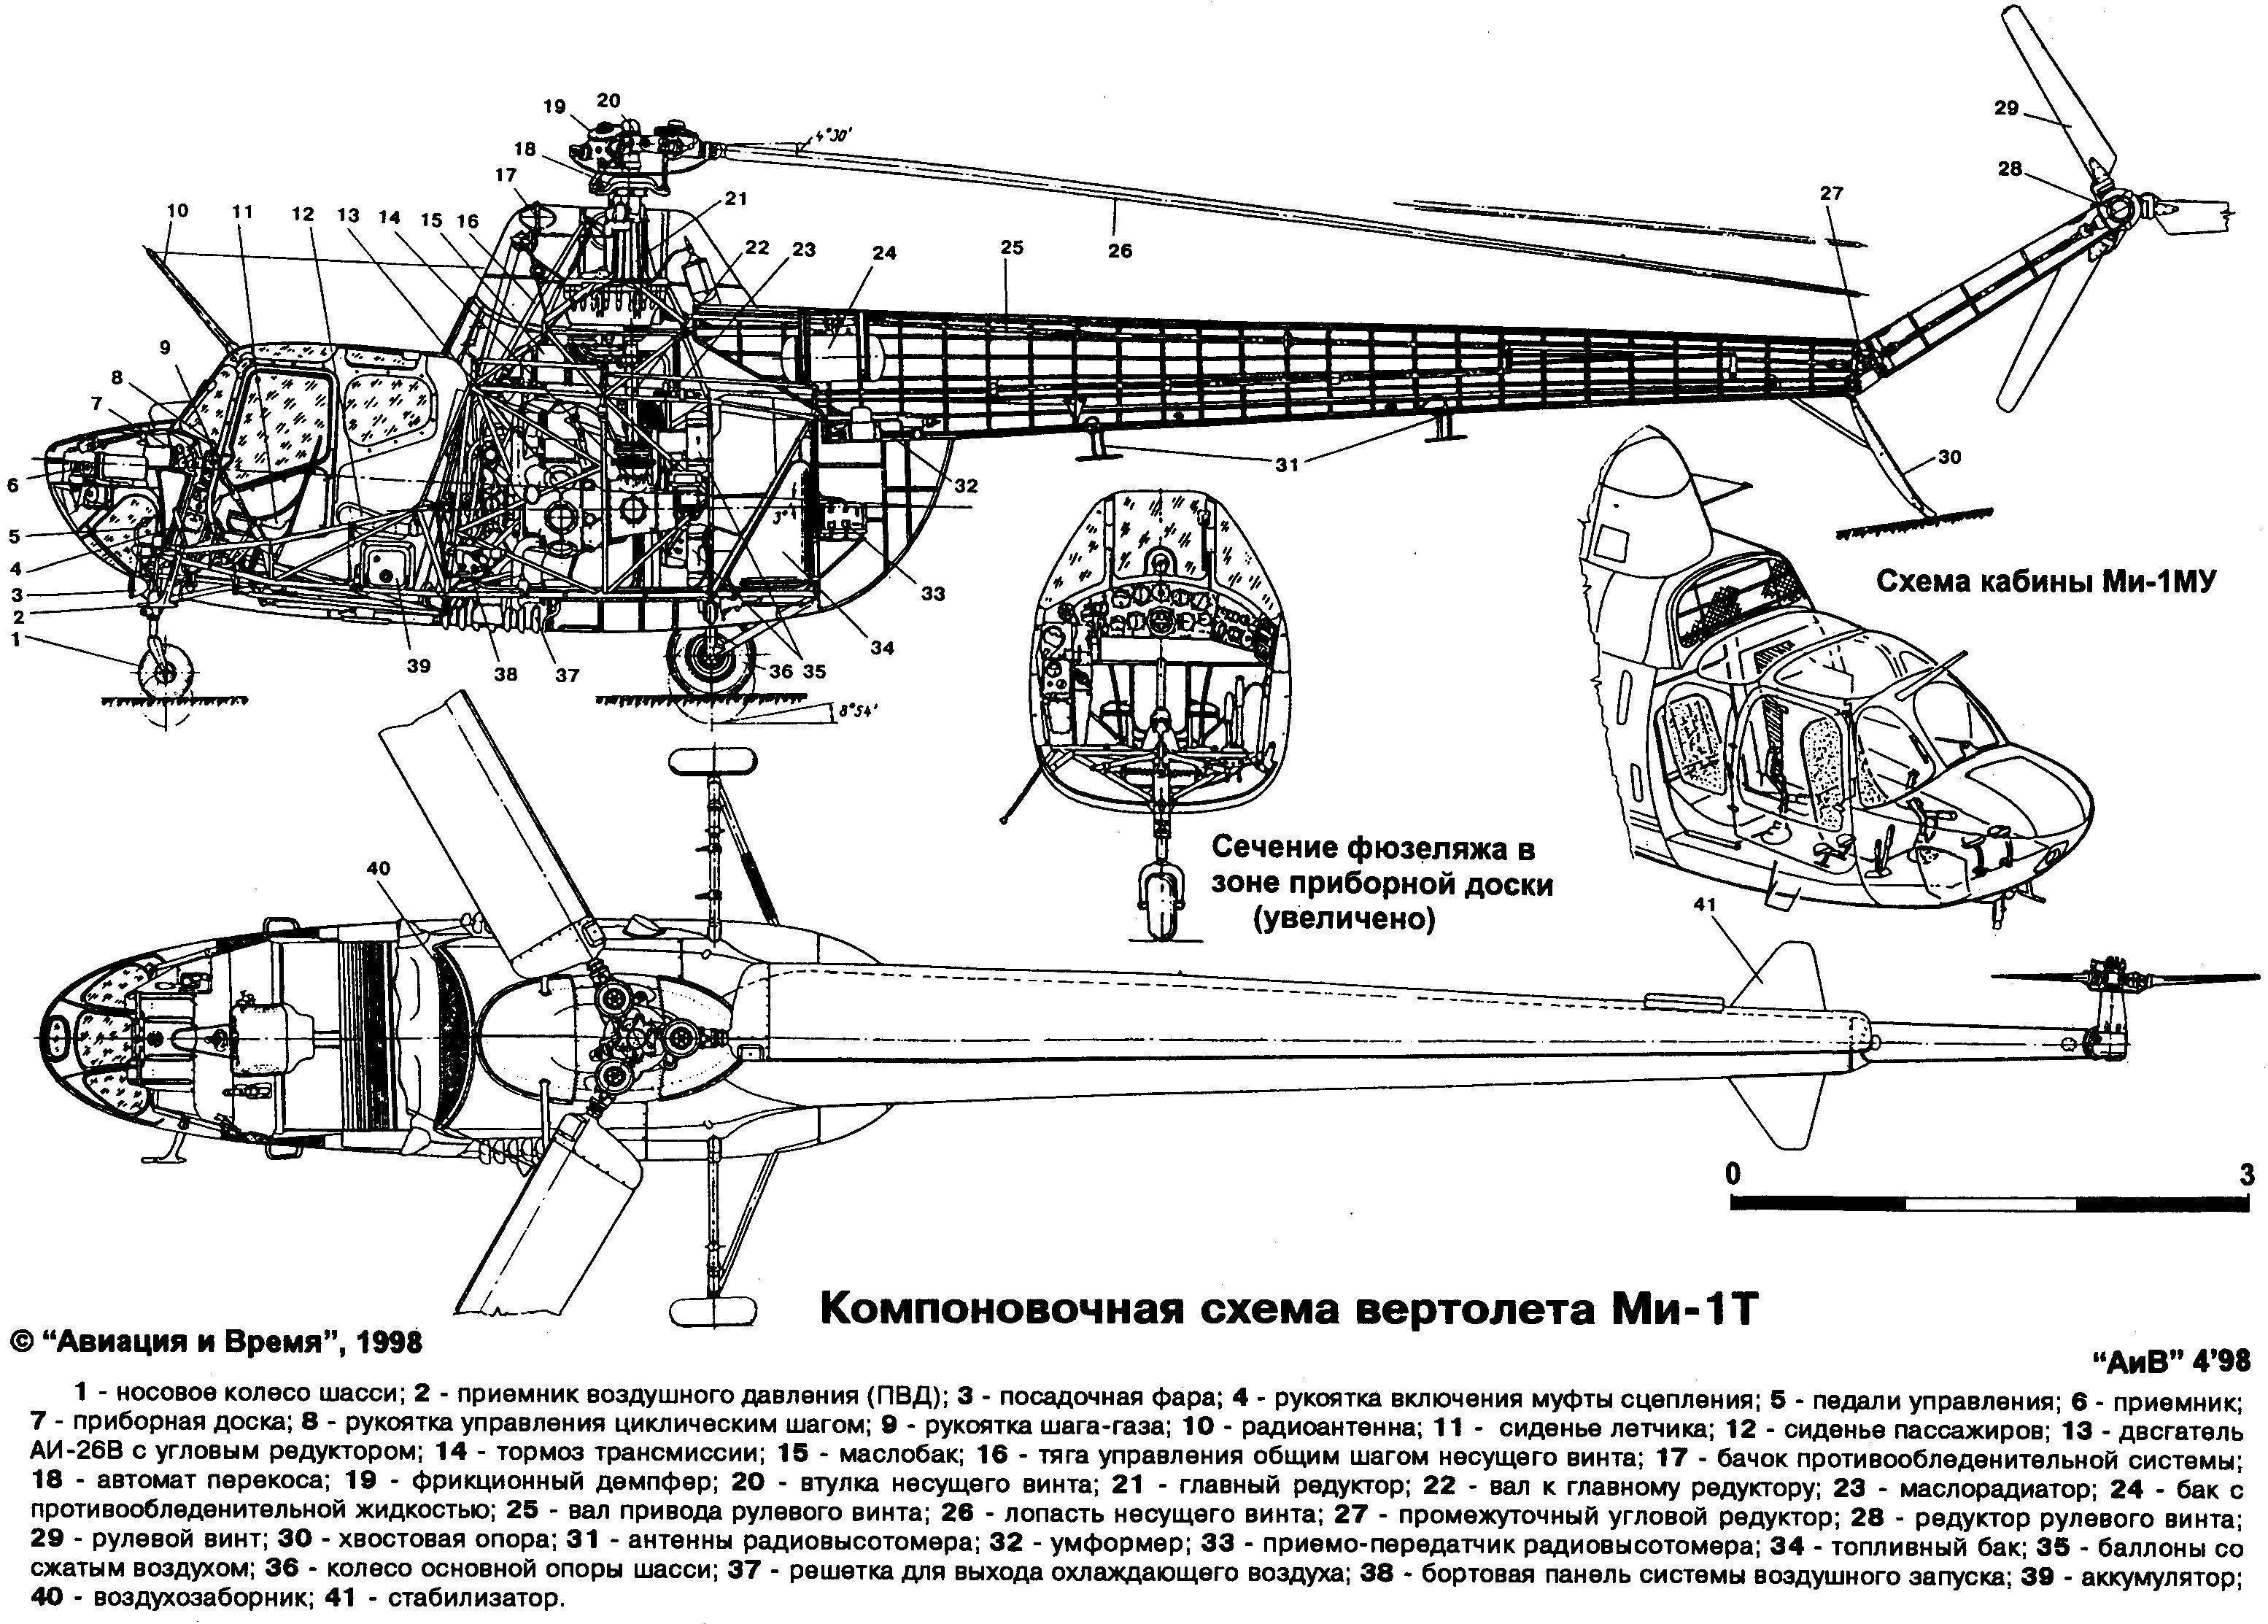 Советский многоцелевой вертолет Ми-4: история, описание и характеристики